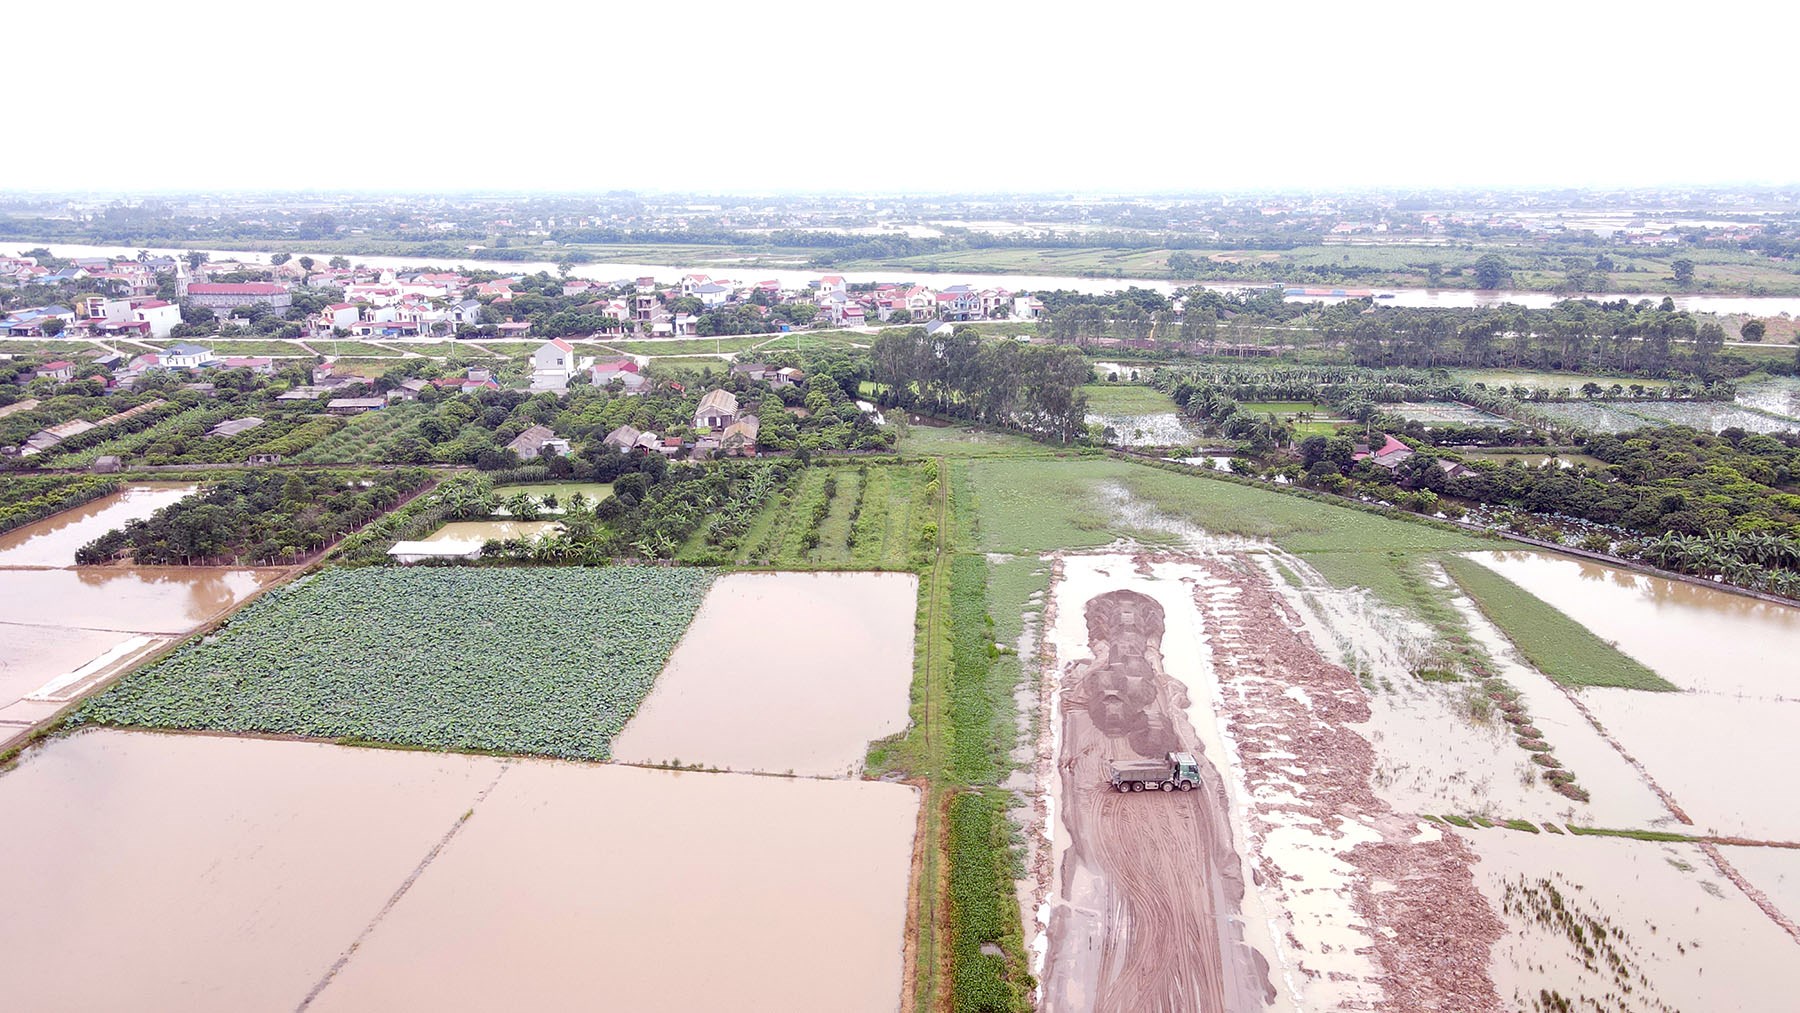 Toàn cảnh vị trí quy hoạch cầu vượt sông Luộc trên đường Tân Phúc - Võng Phan, Hưng Yên